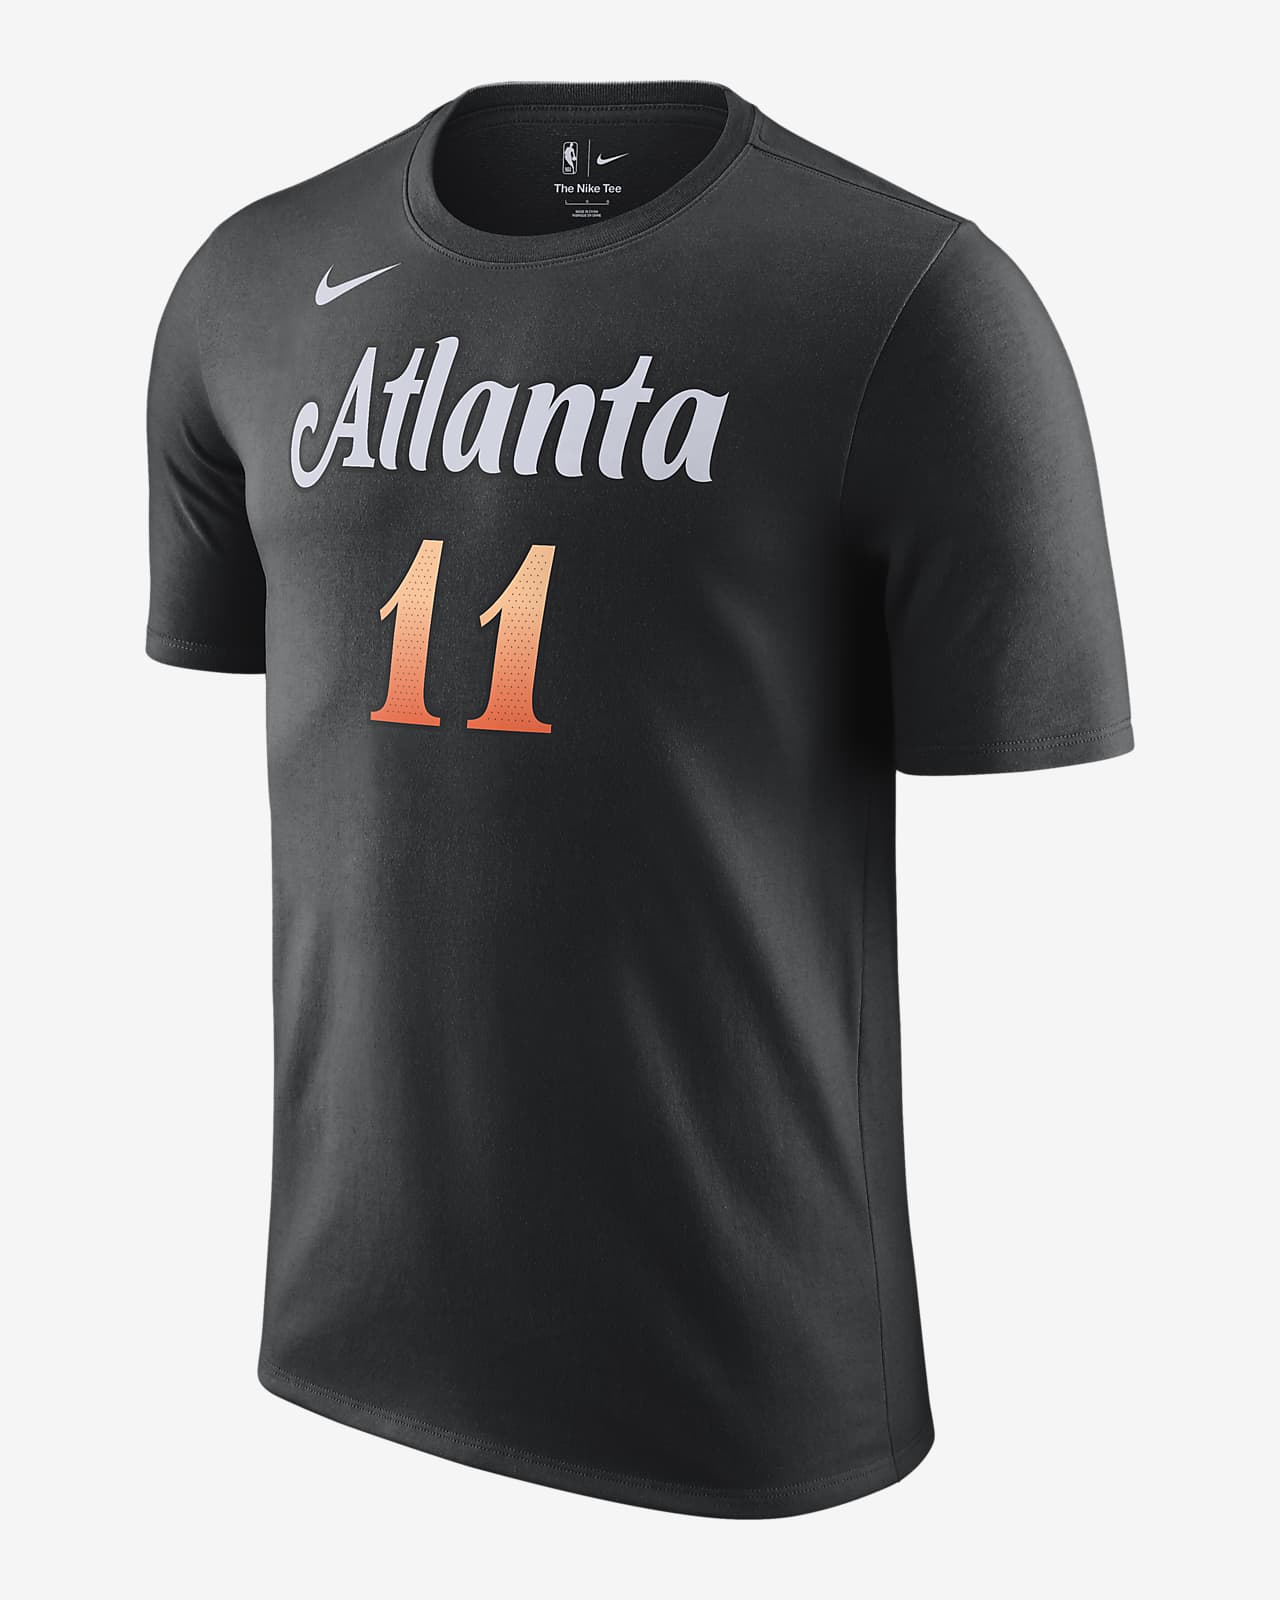 Atlanta Hawks New Nike City Edition Jerseys Appear Online - Sports